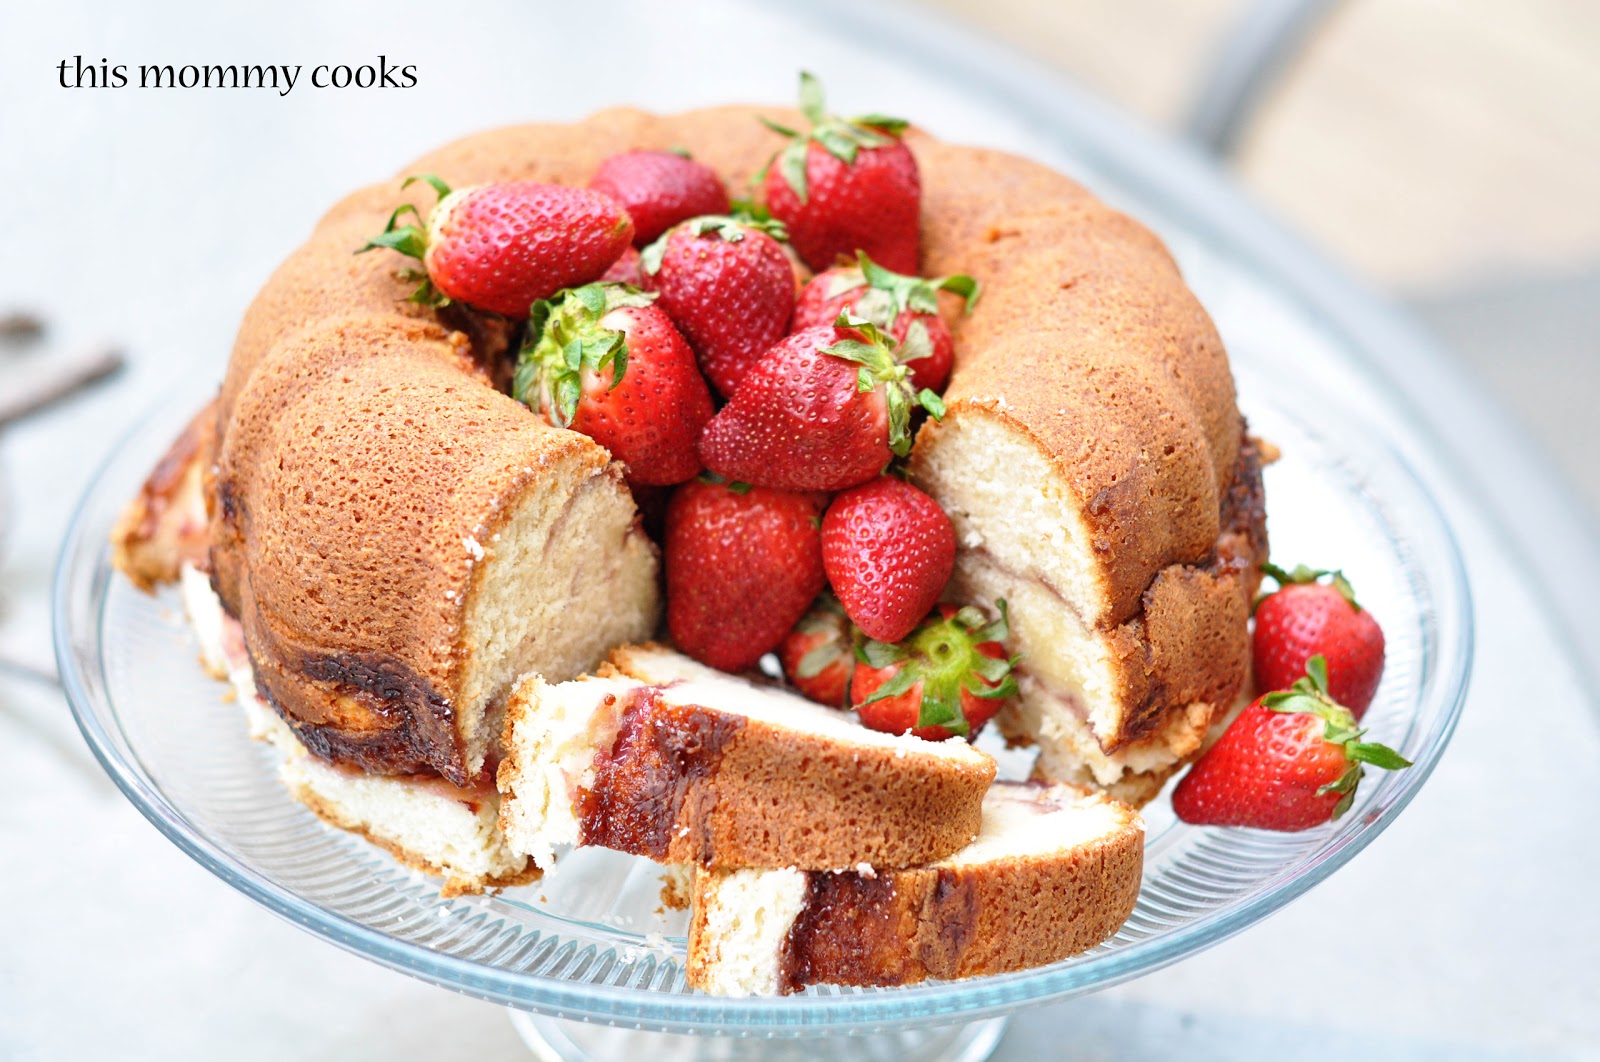 Strawberry bundt cake recipe with strawberry swirl